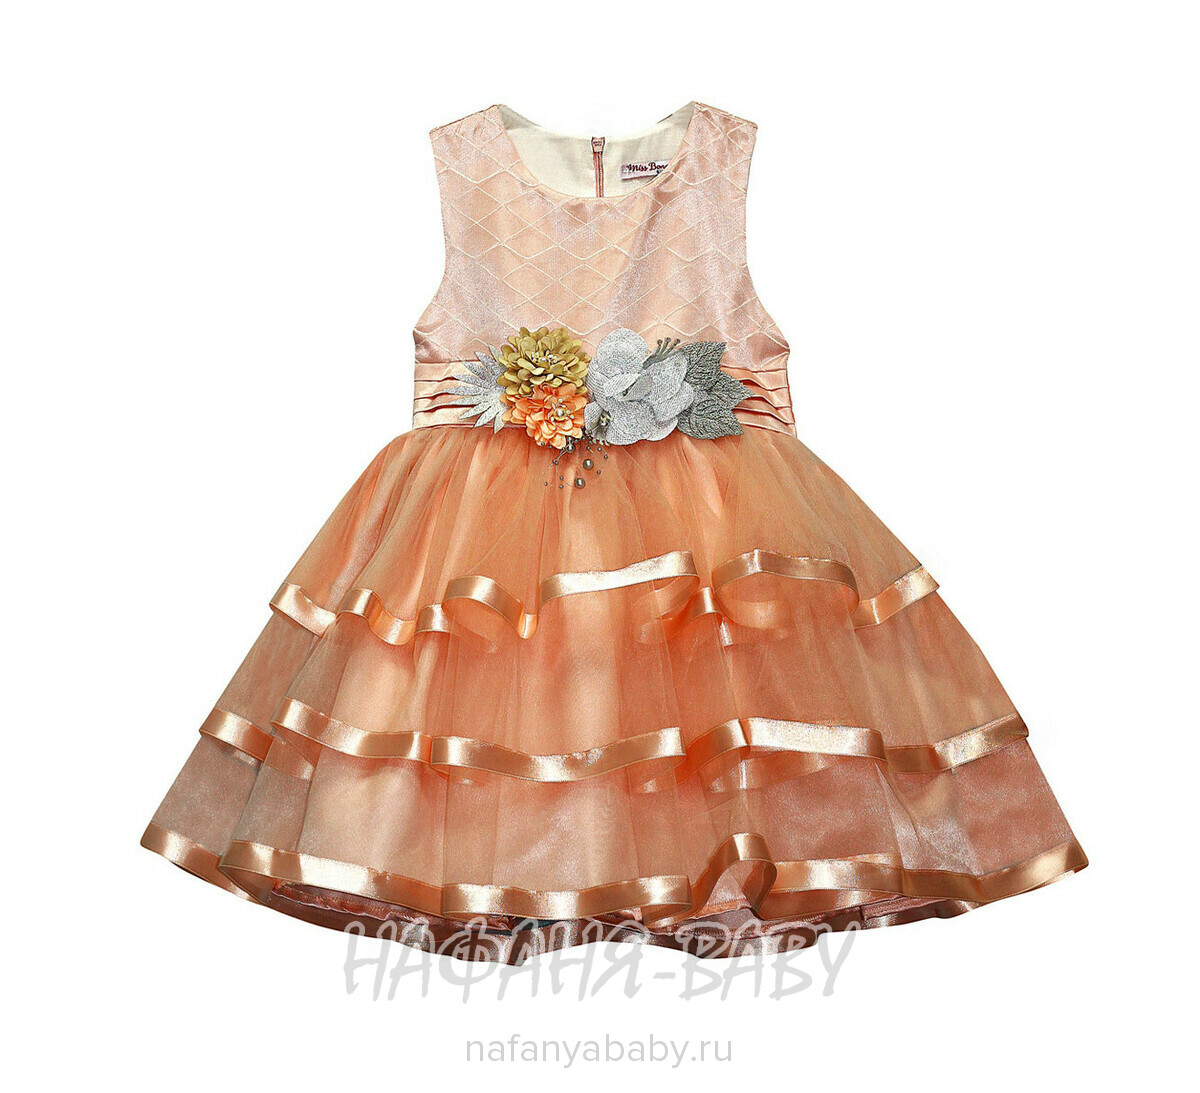 Детское нарядное платье Miss BONNY, купить в интернет магазине Нафаня. арт: 0065.